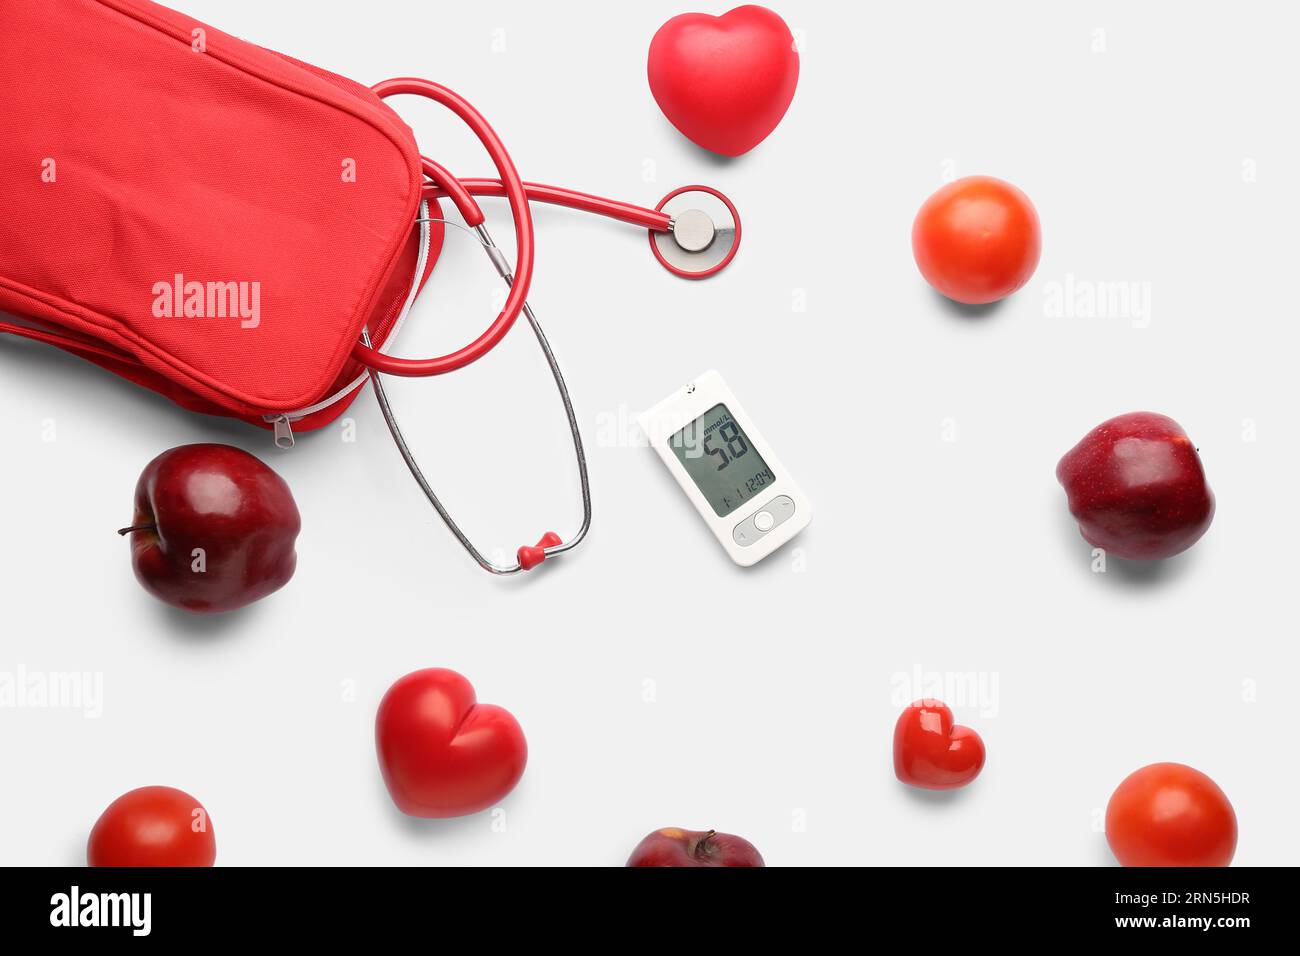 Zusammensetzung mit Glucometer, Stethoskop, roten Herzen und frischen Äpfeln auf weißem Hintergrund. Diabetes-Konzept Stockfoto